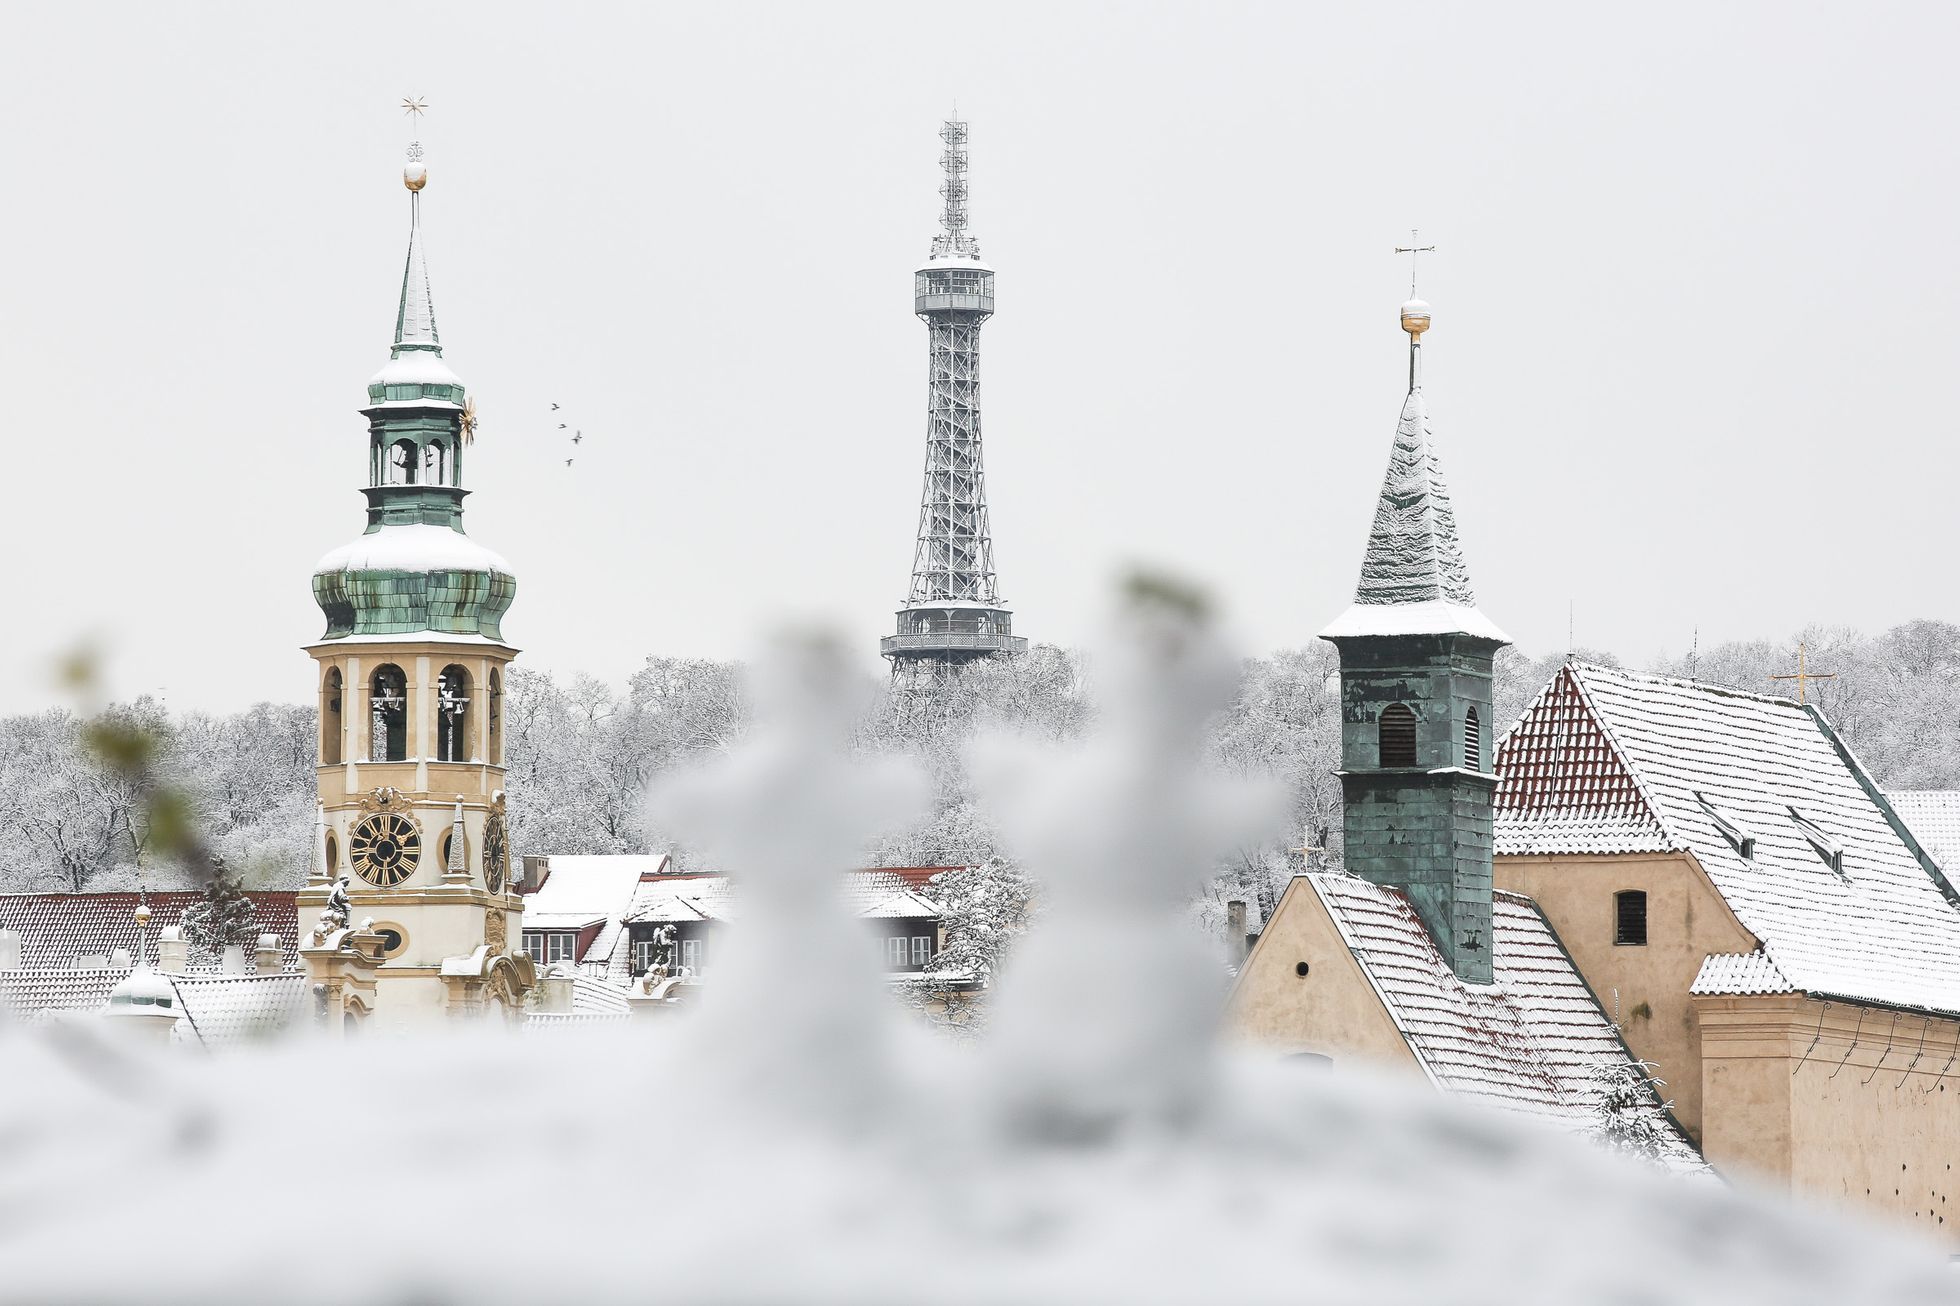 Zasněžená Praha, sníh, panorama, zima, leden 2021